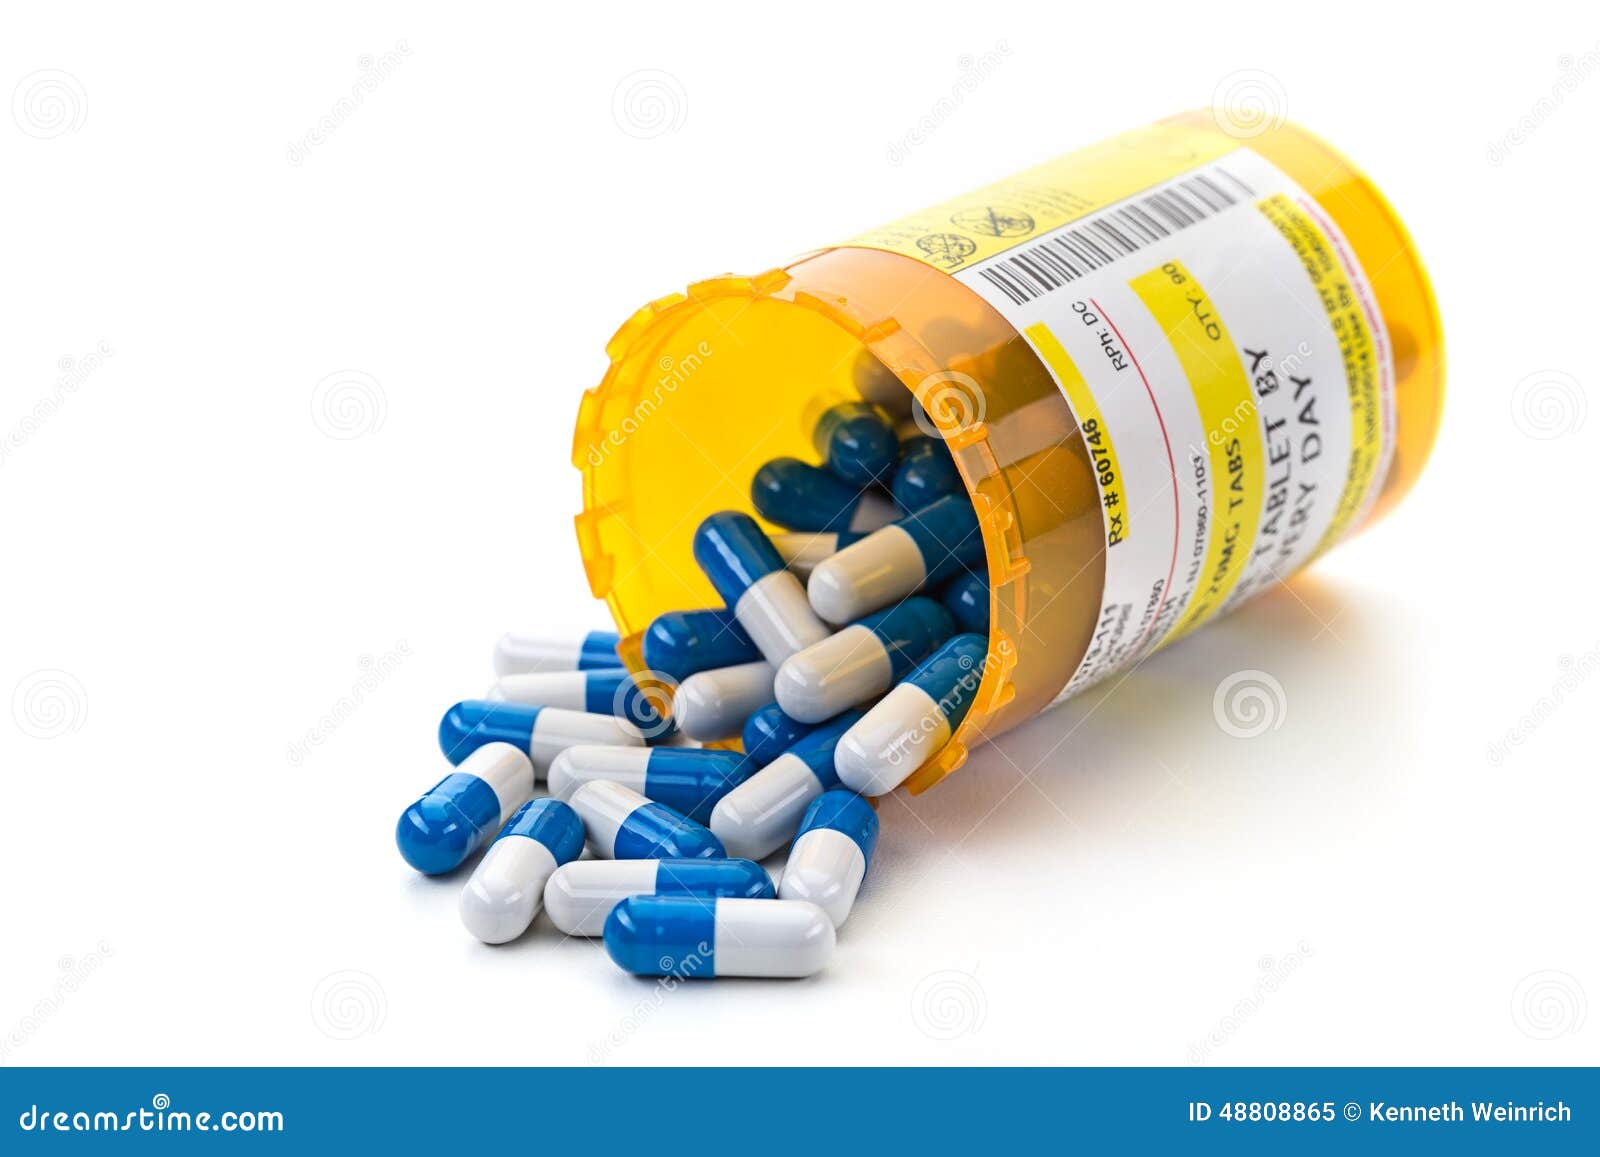 prescription medication in pharmacy pill vials